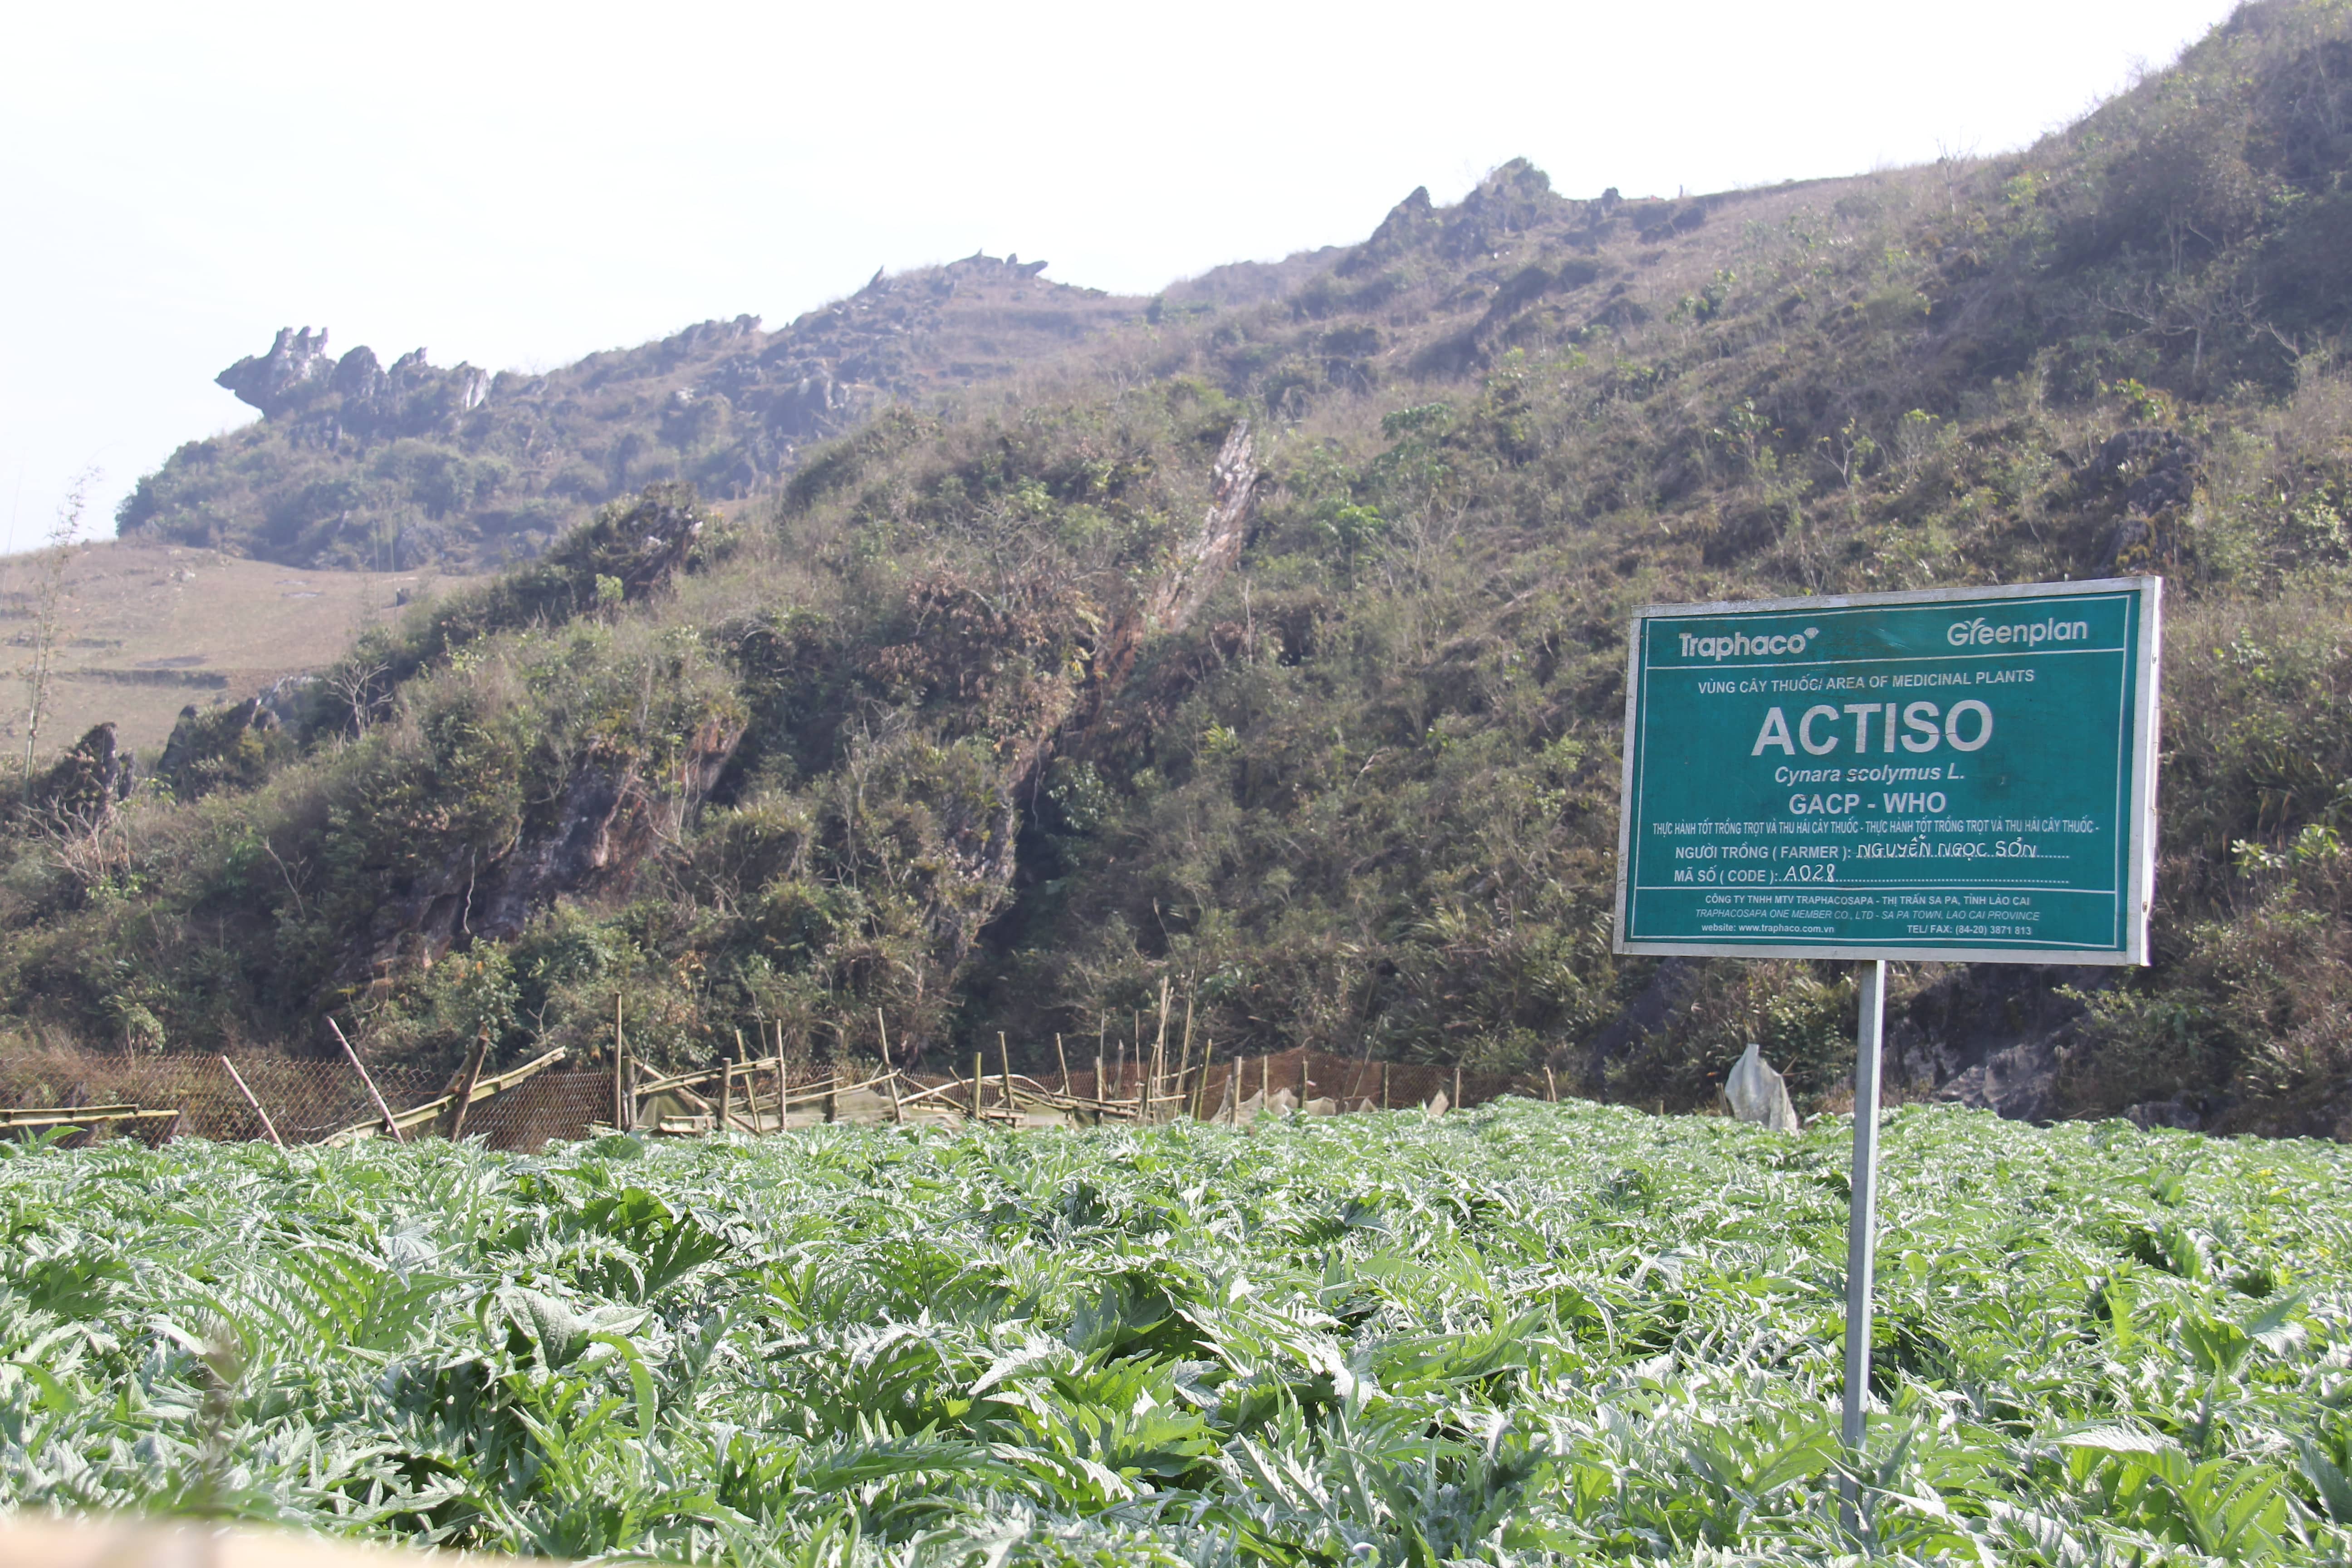 Vùng trồng dược liệu sản xuất cao atiso sapa đạt chuẩn GACP